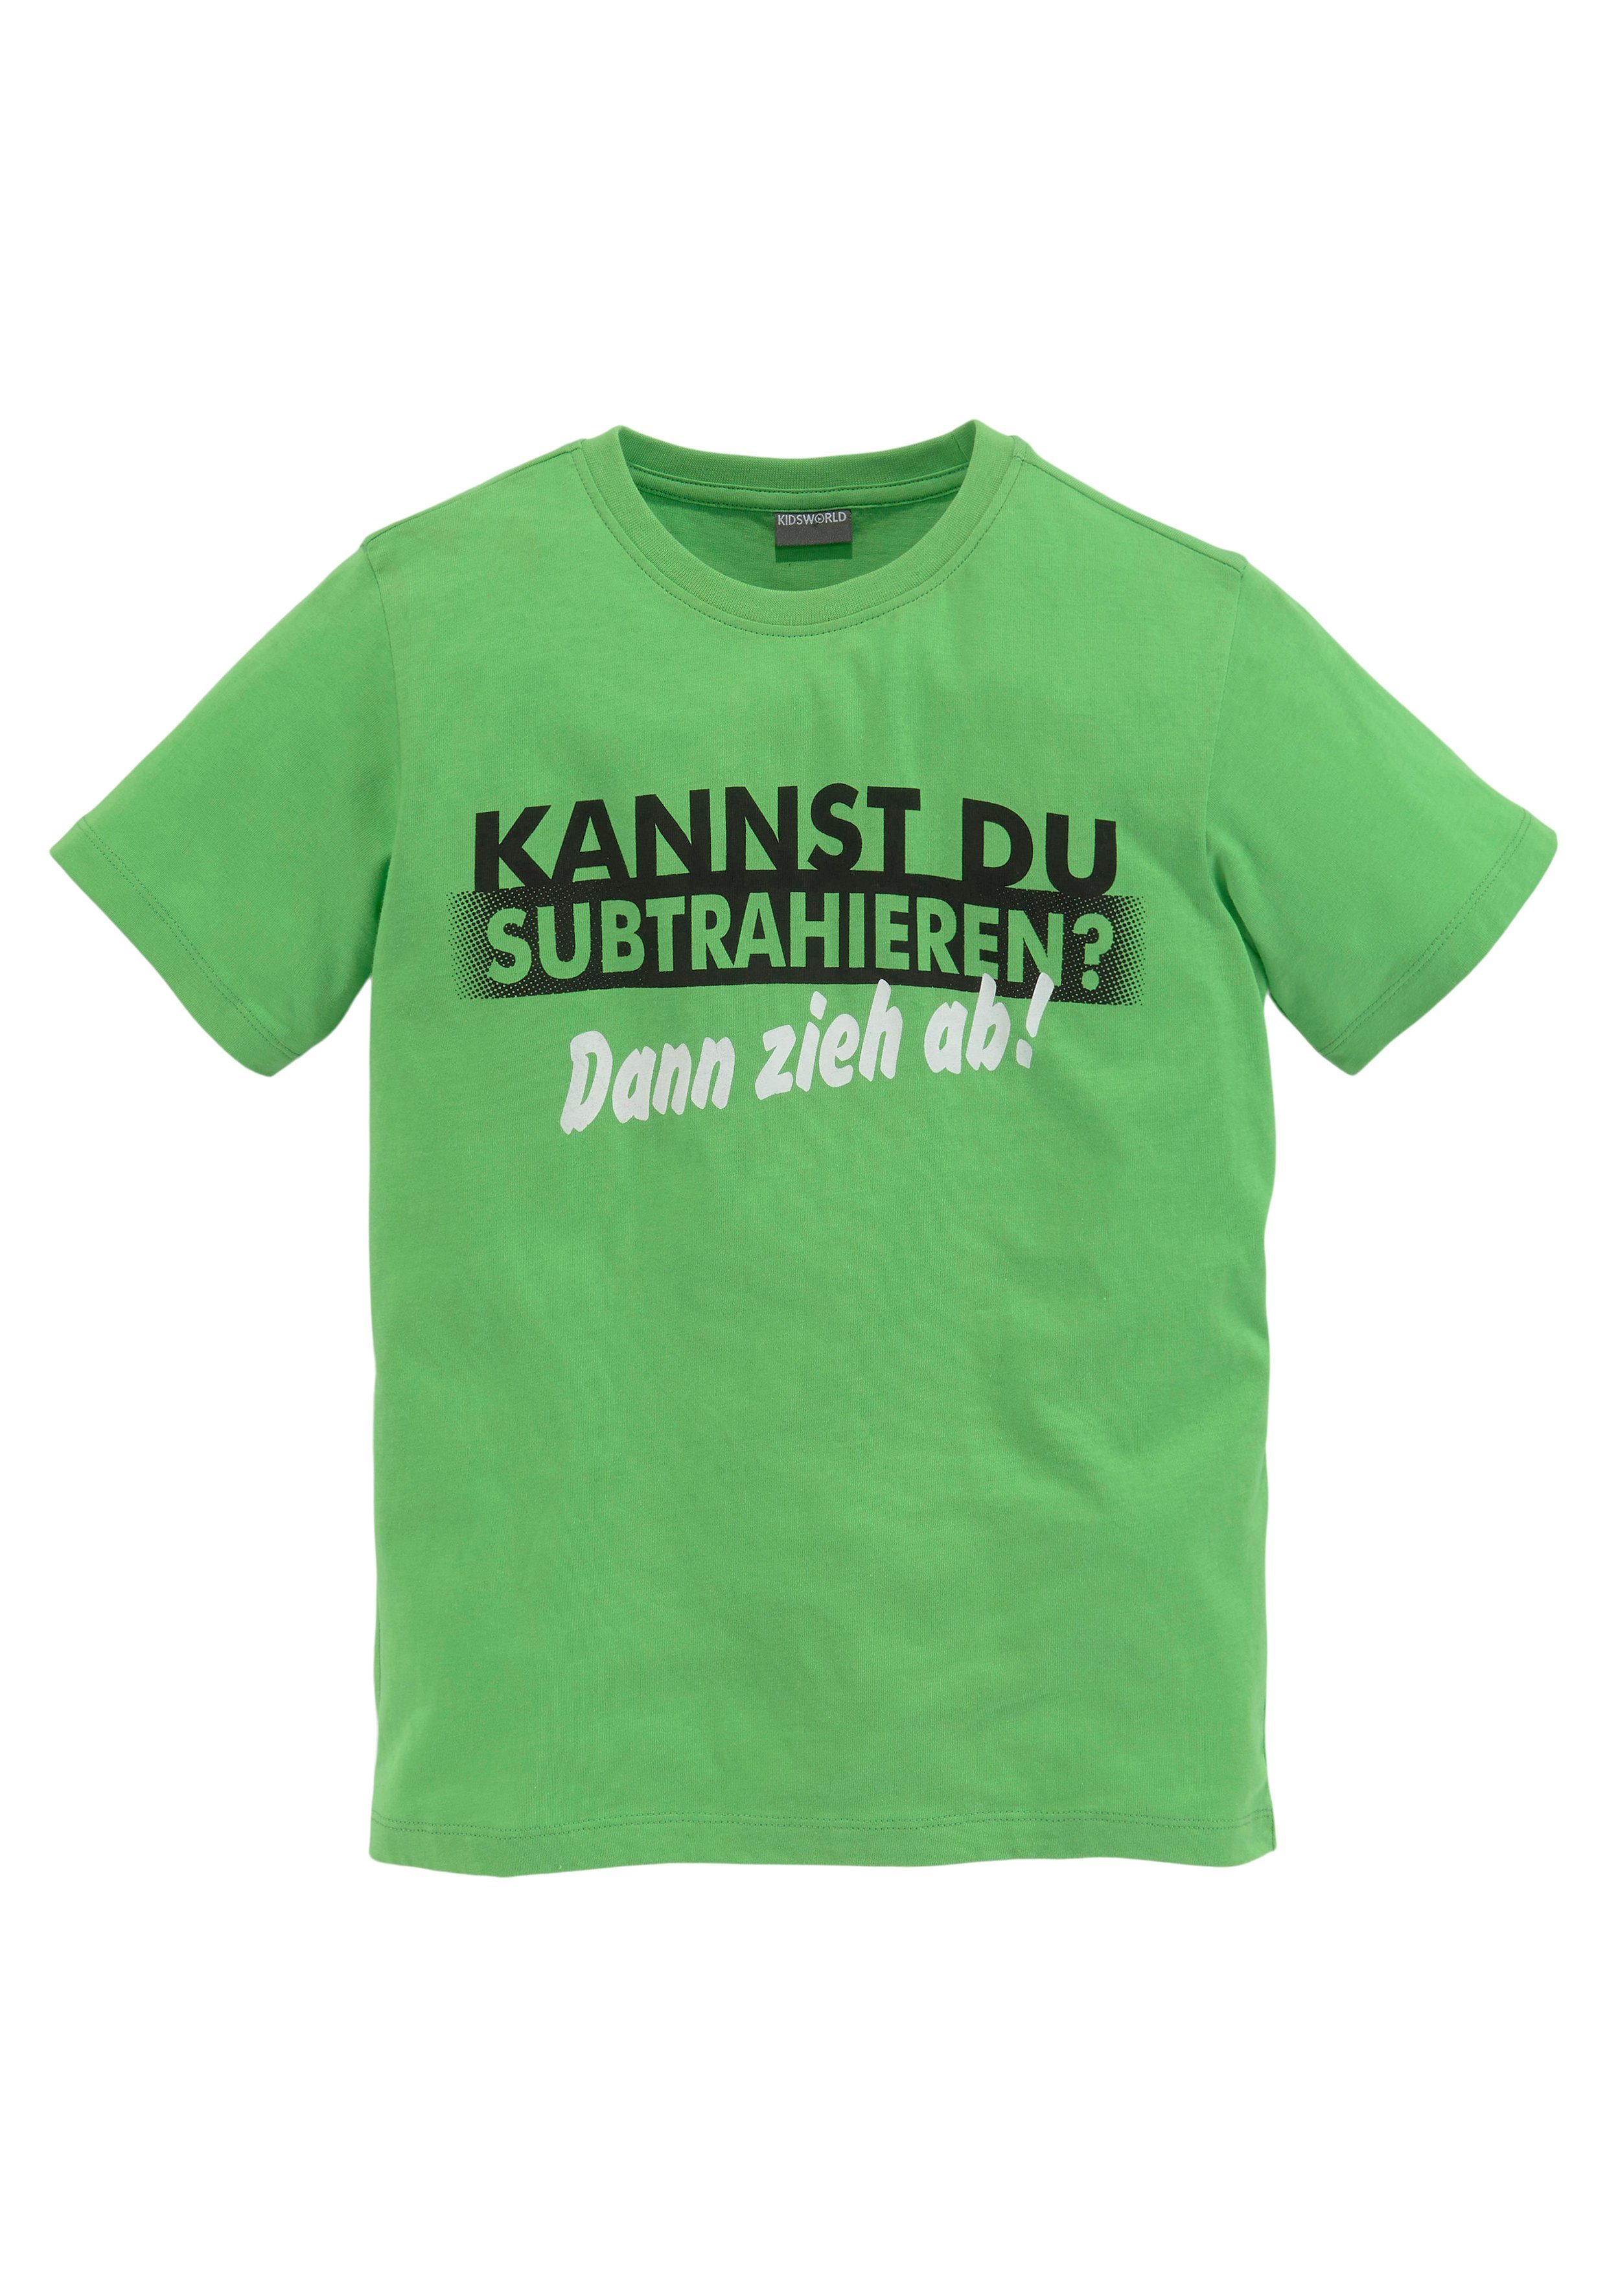 SUBTRAHIEREN?, DU Spruch T-Shirt KANNST KIDSWORLD